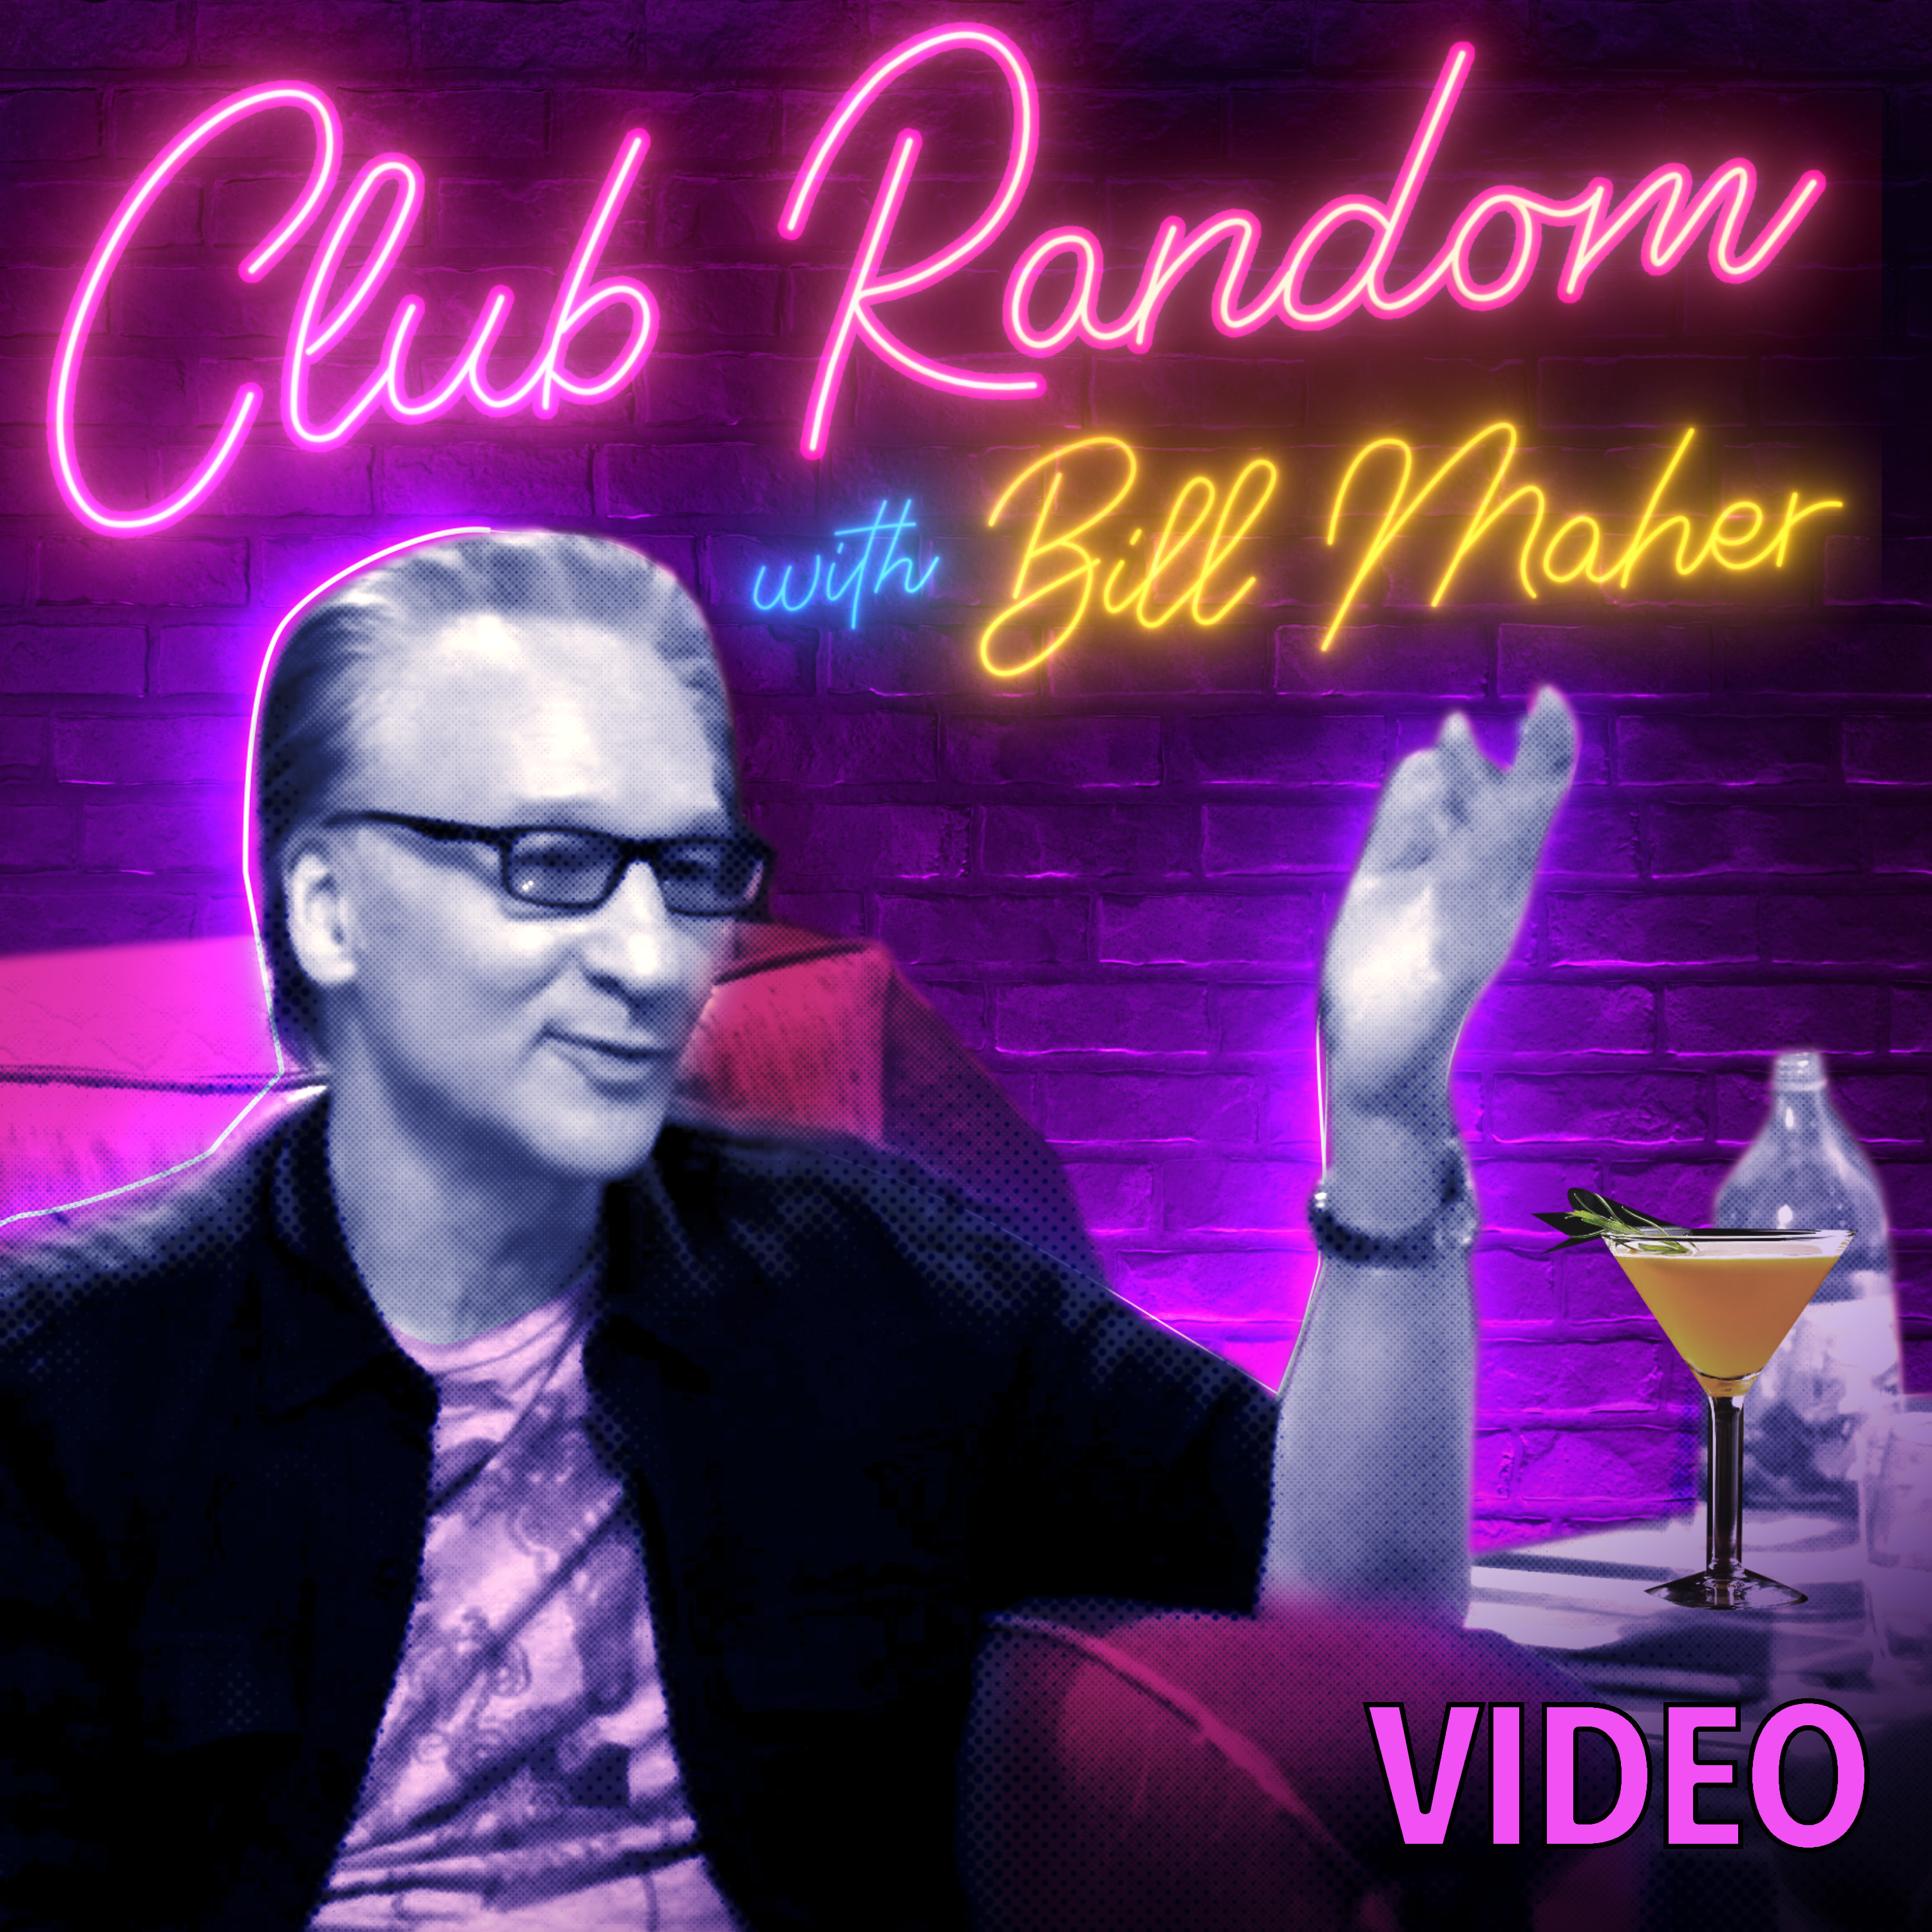 Video: Bill Burr | Club Random with Bill Maher